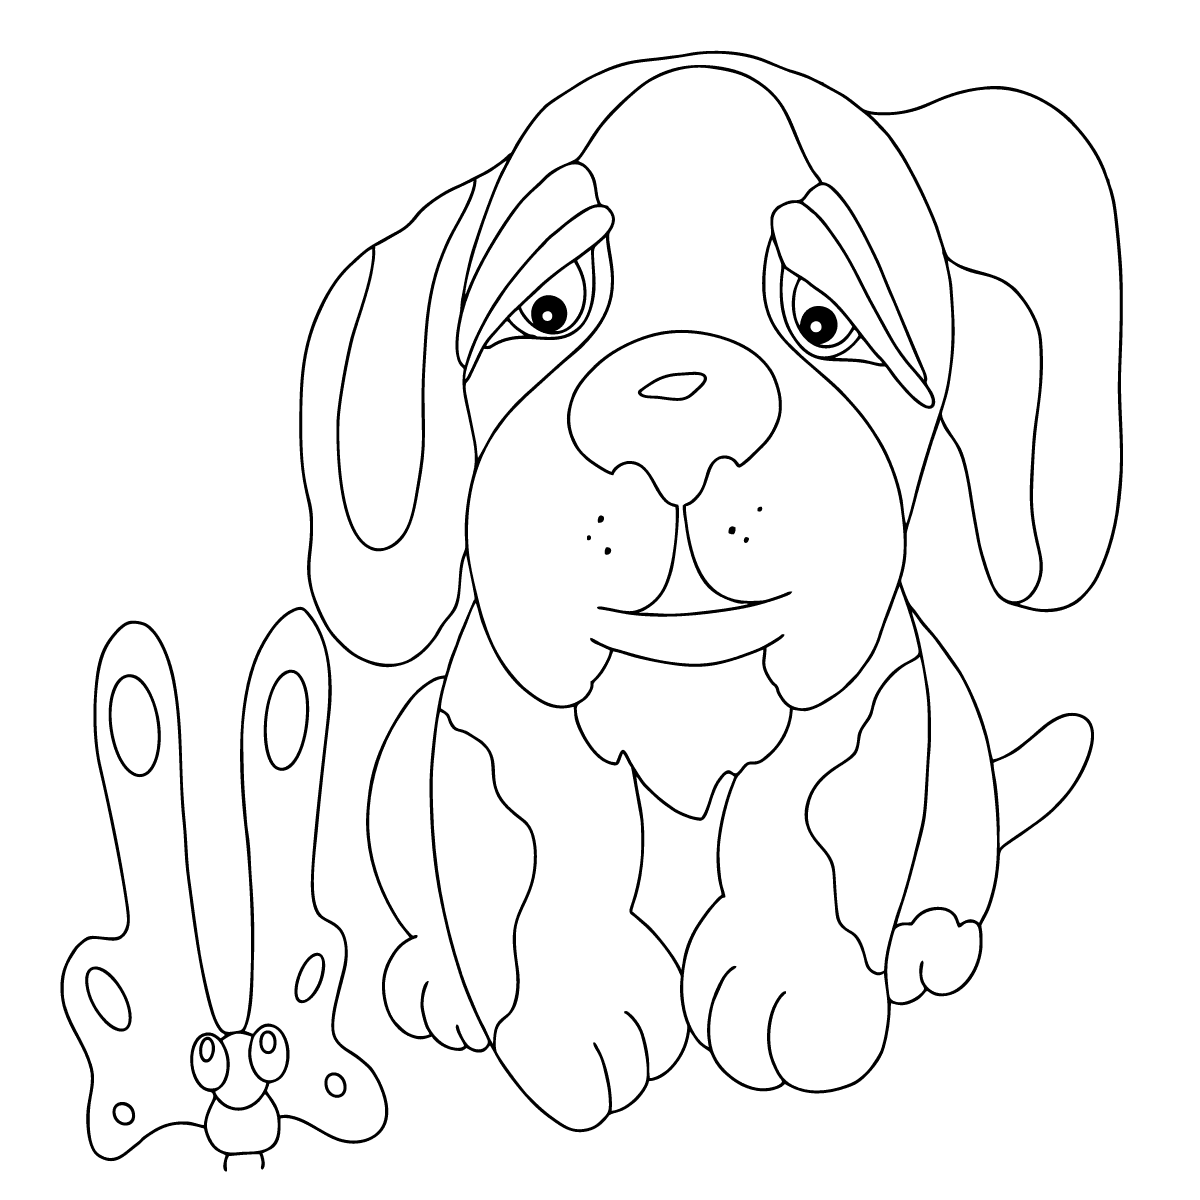 Раскраски Собака для детей - Распечатать (А4), Скачать и Онлайн!